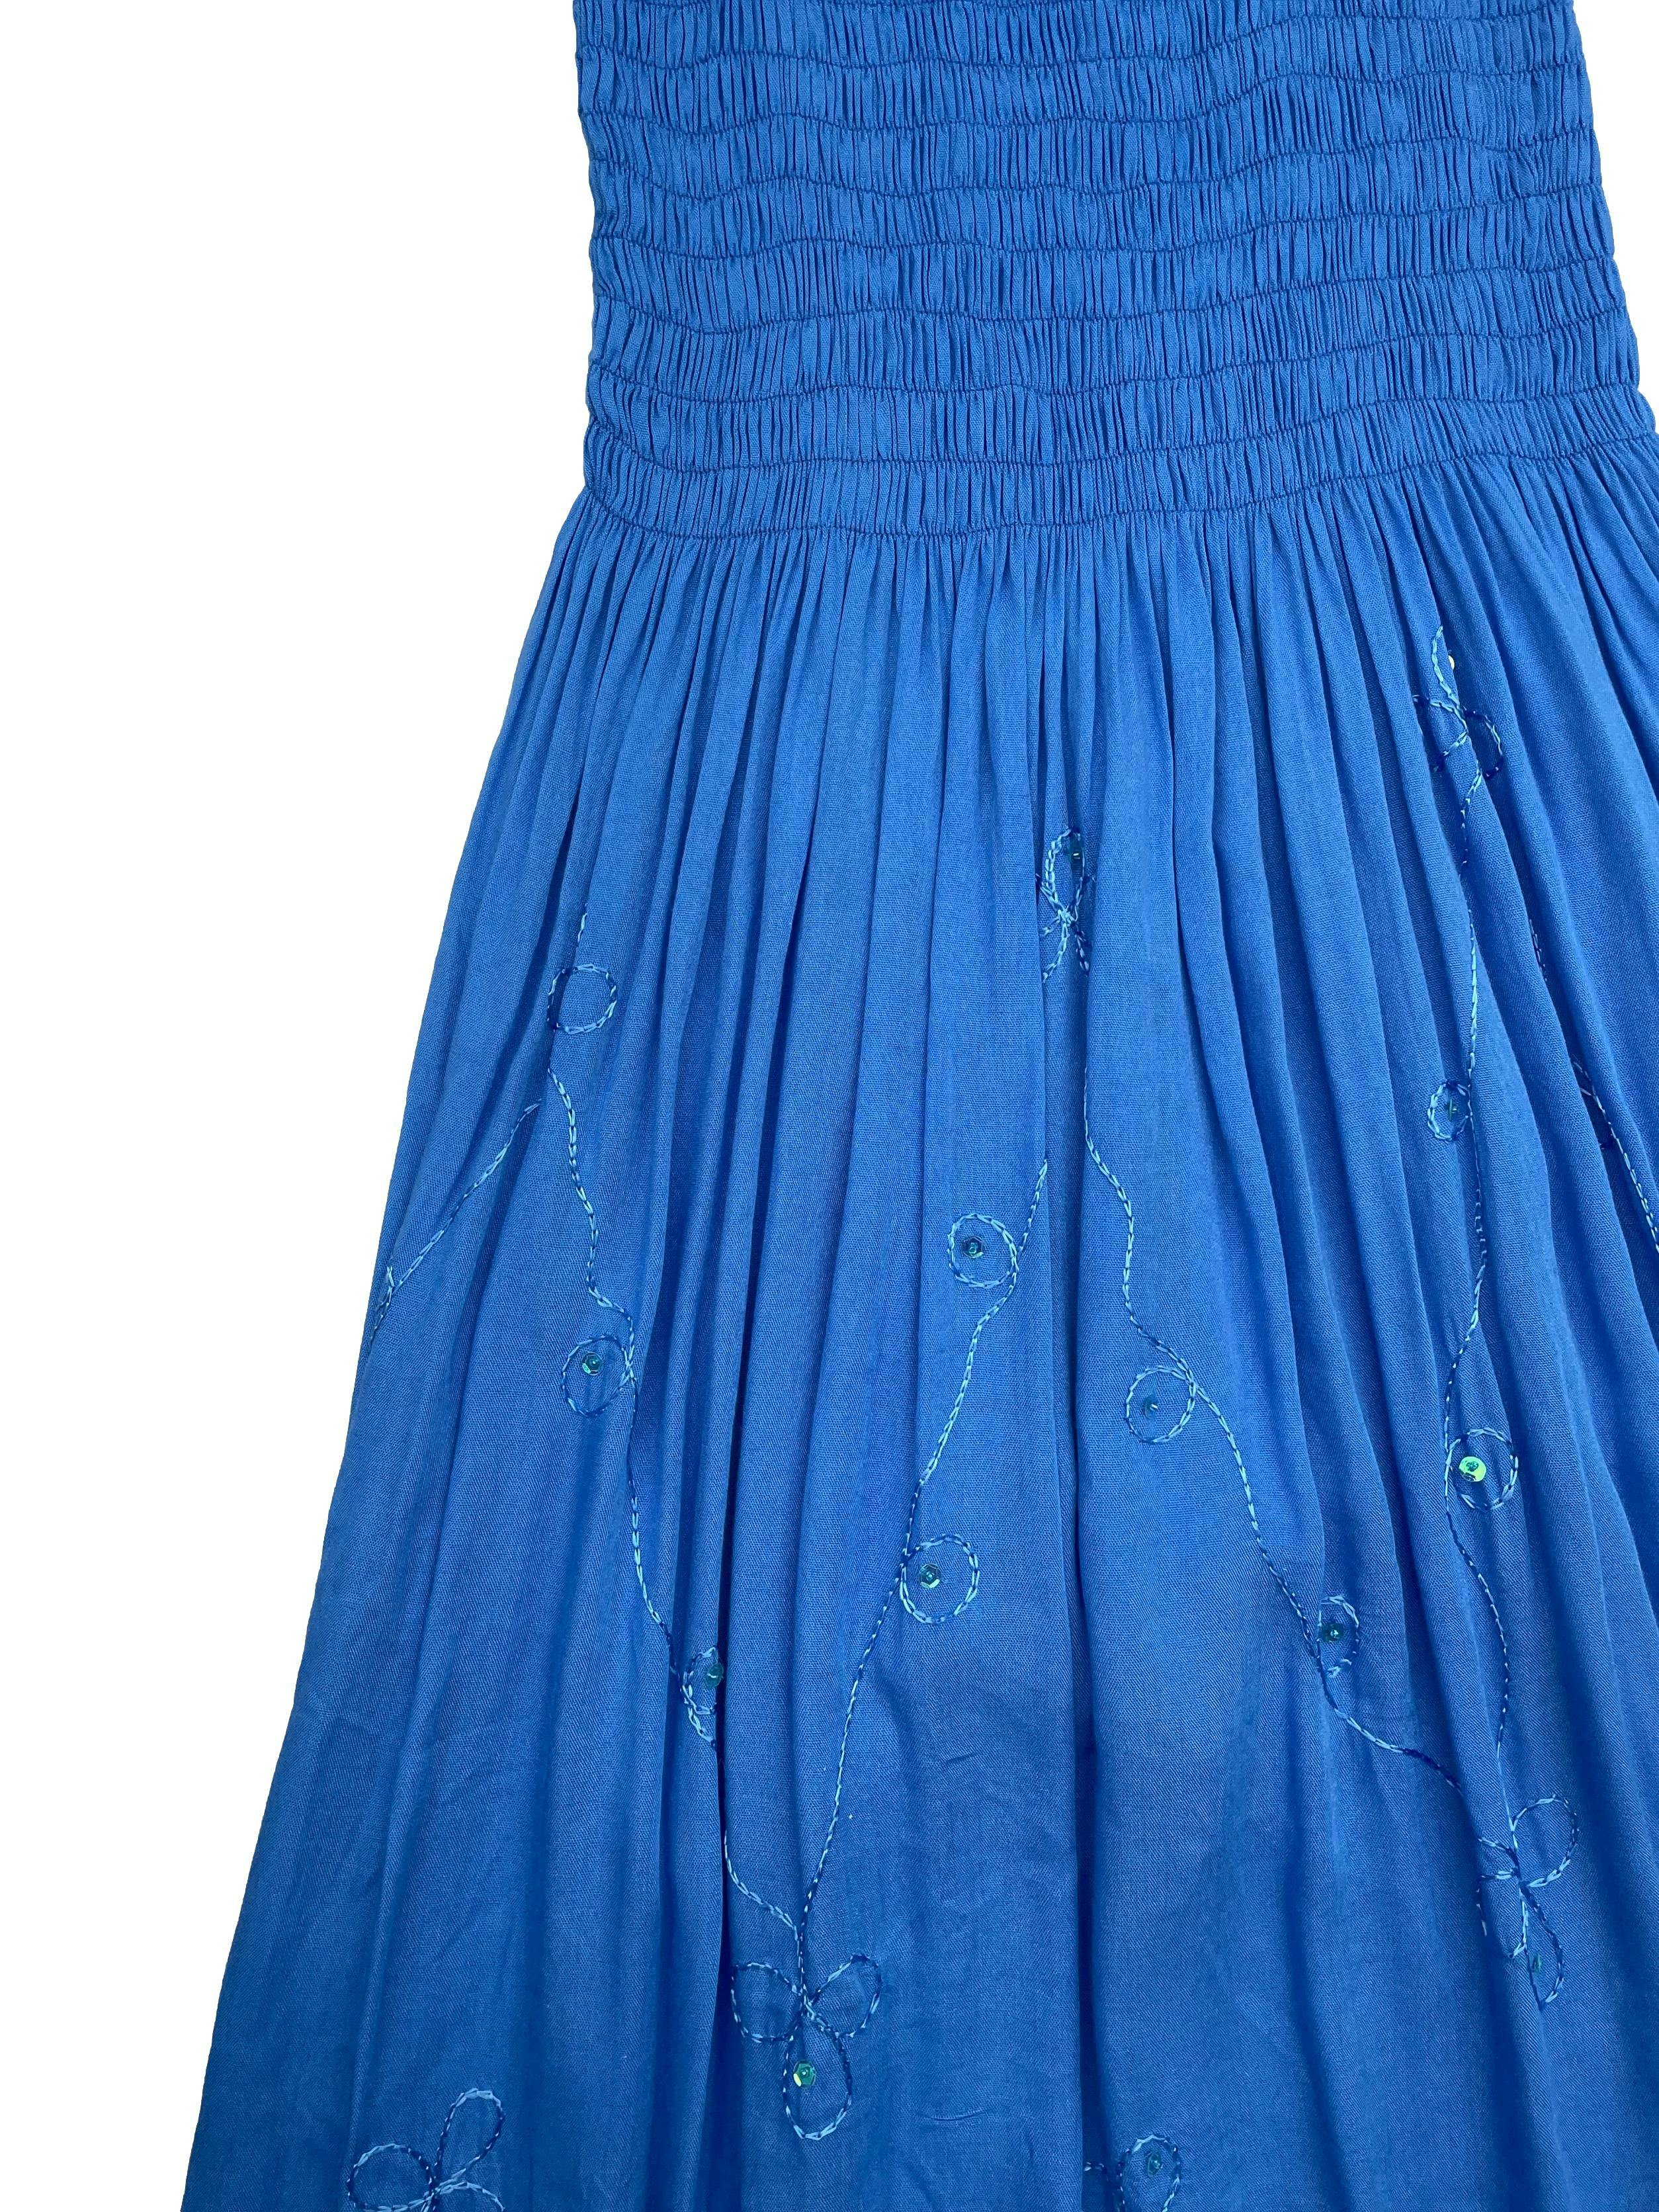 Vestido midi tela fresca azul, superior panal de abeja, detalles bordados y aplicaciones. Largo 105cm